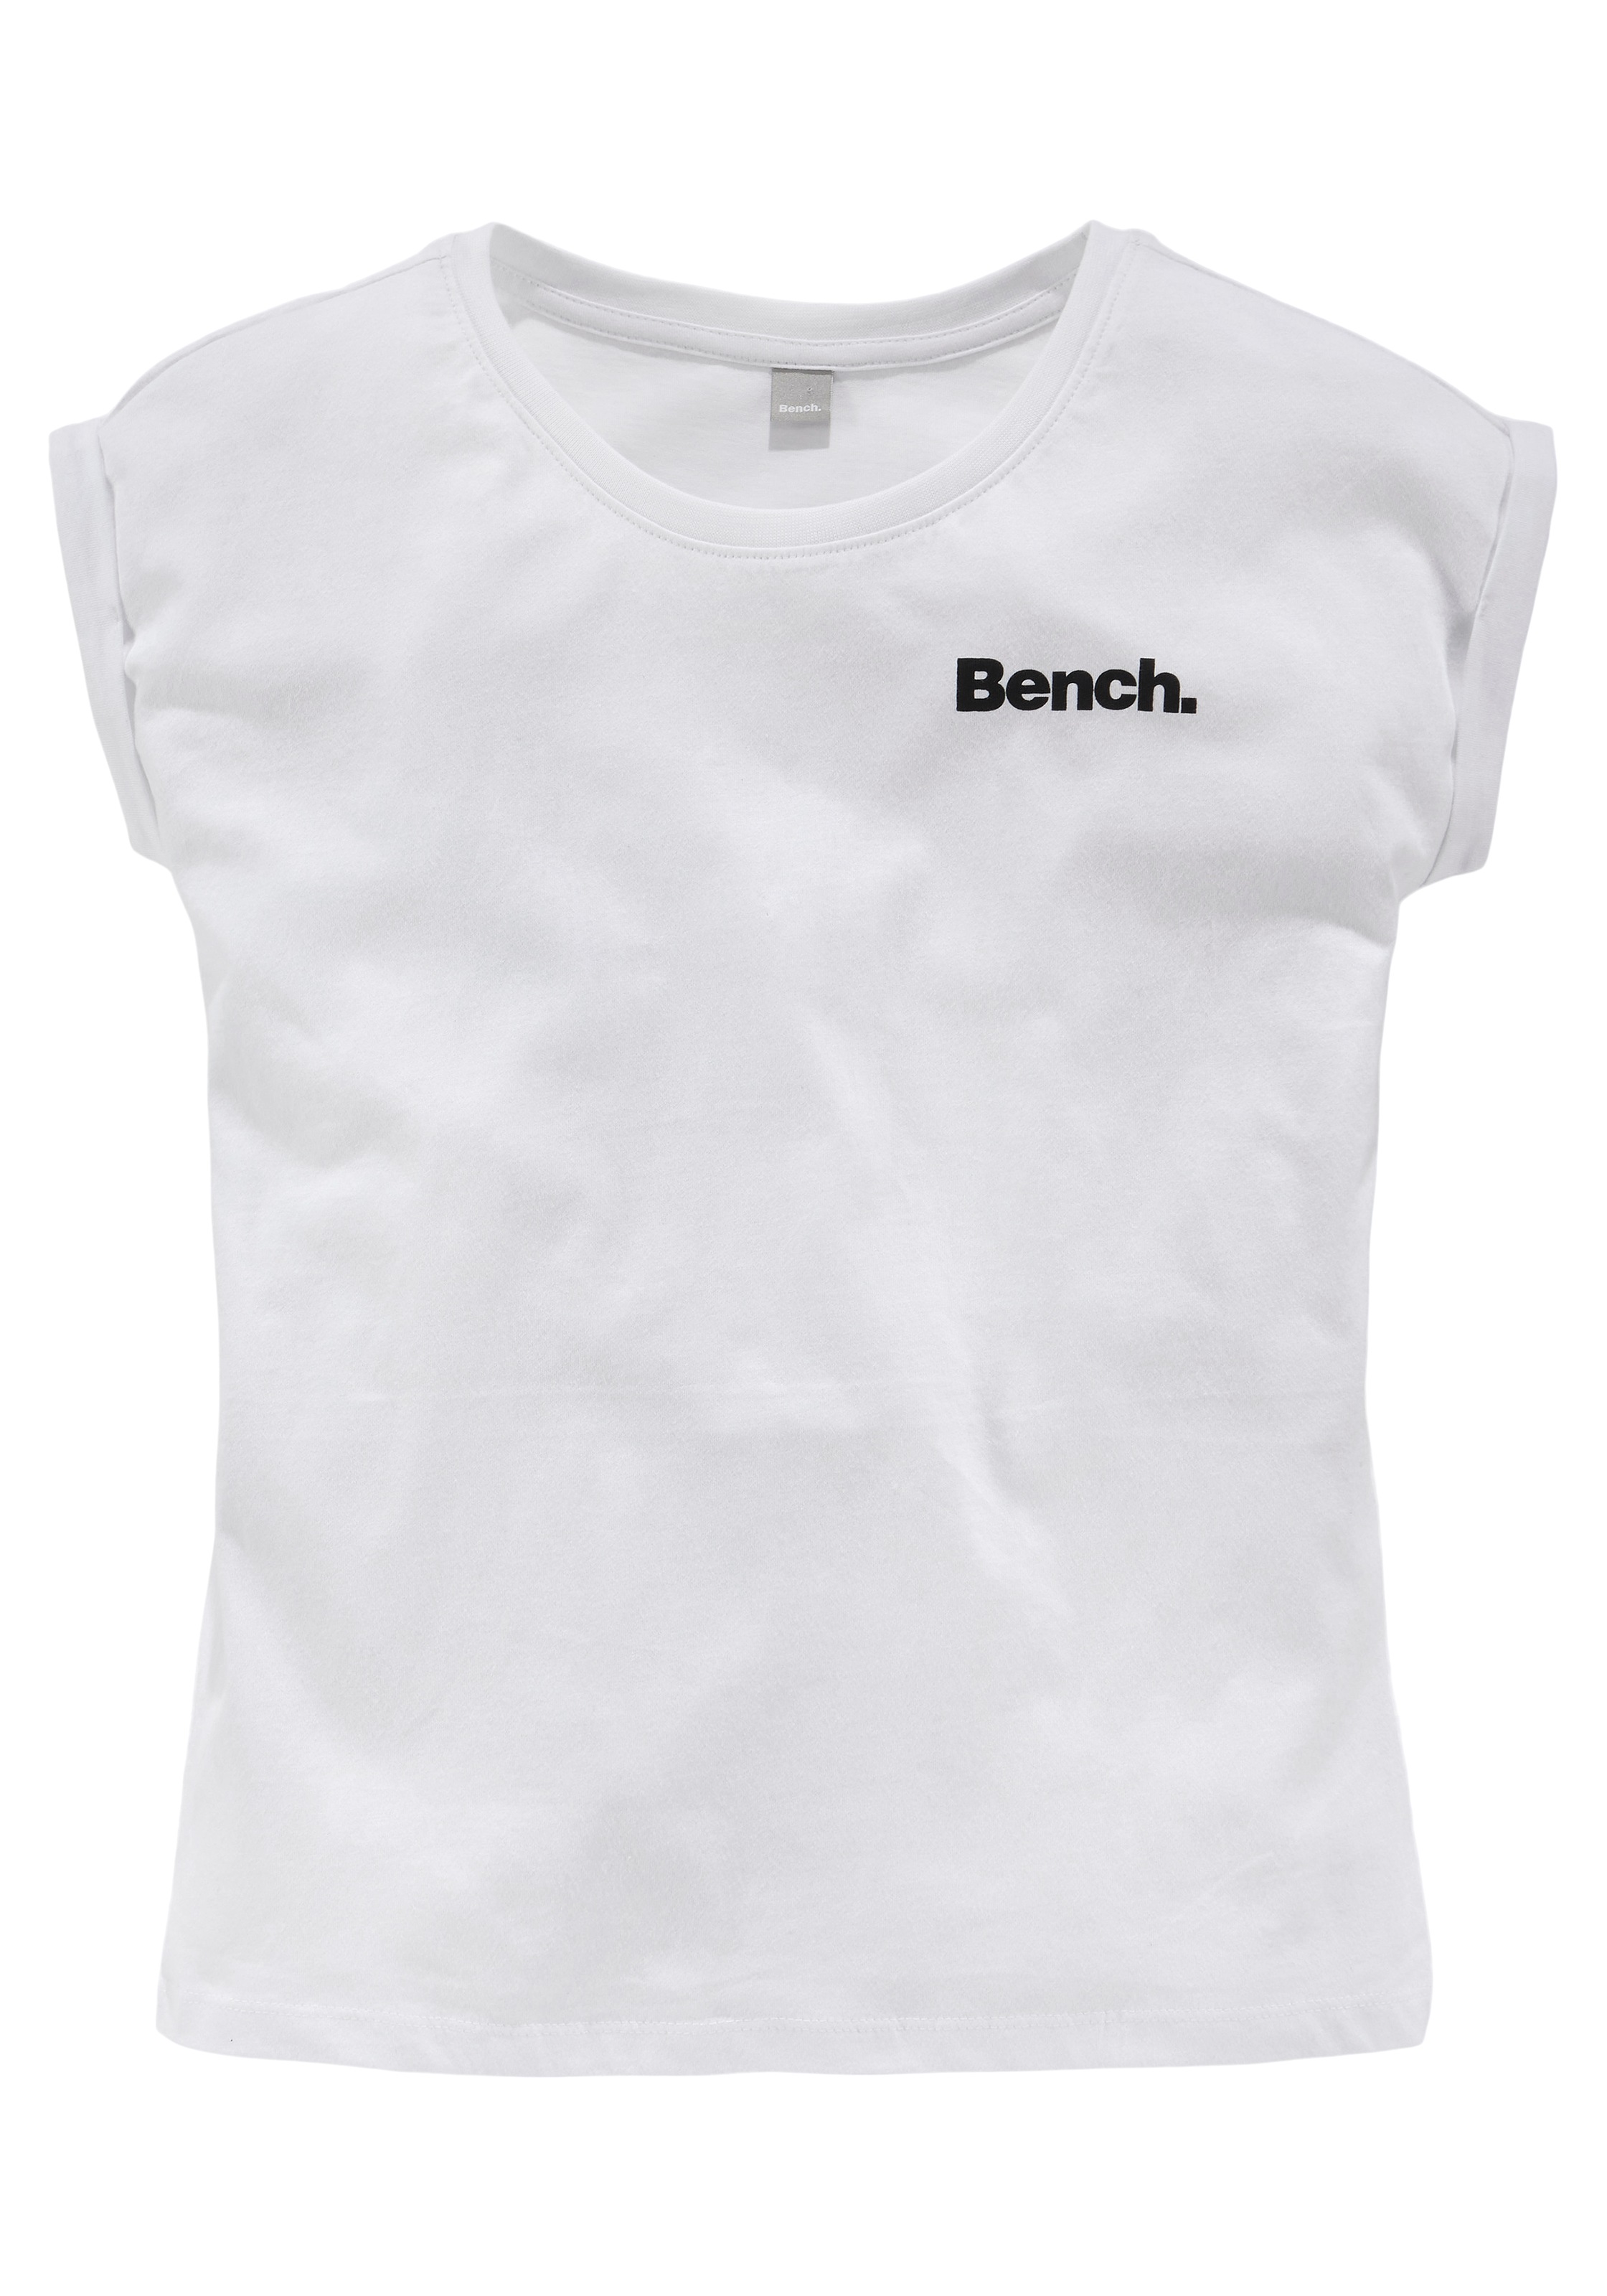 %Sale T-Shirt, mit Fotodruck jetzt Bench. im